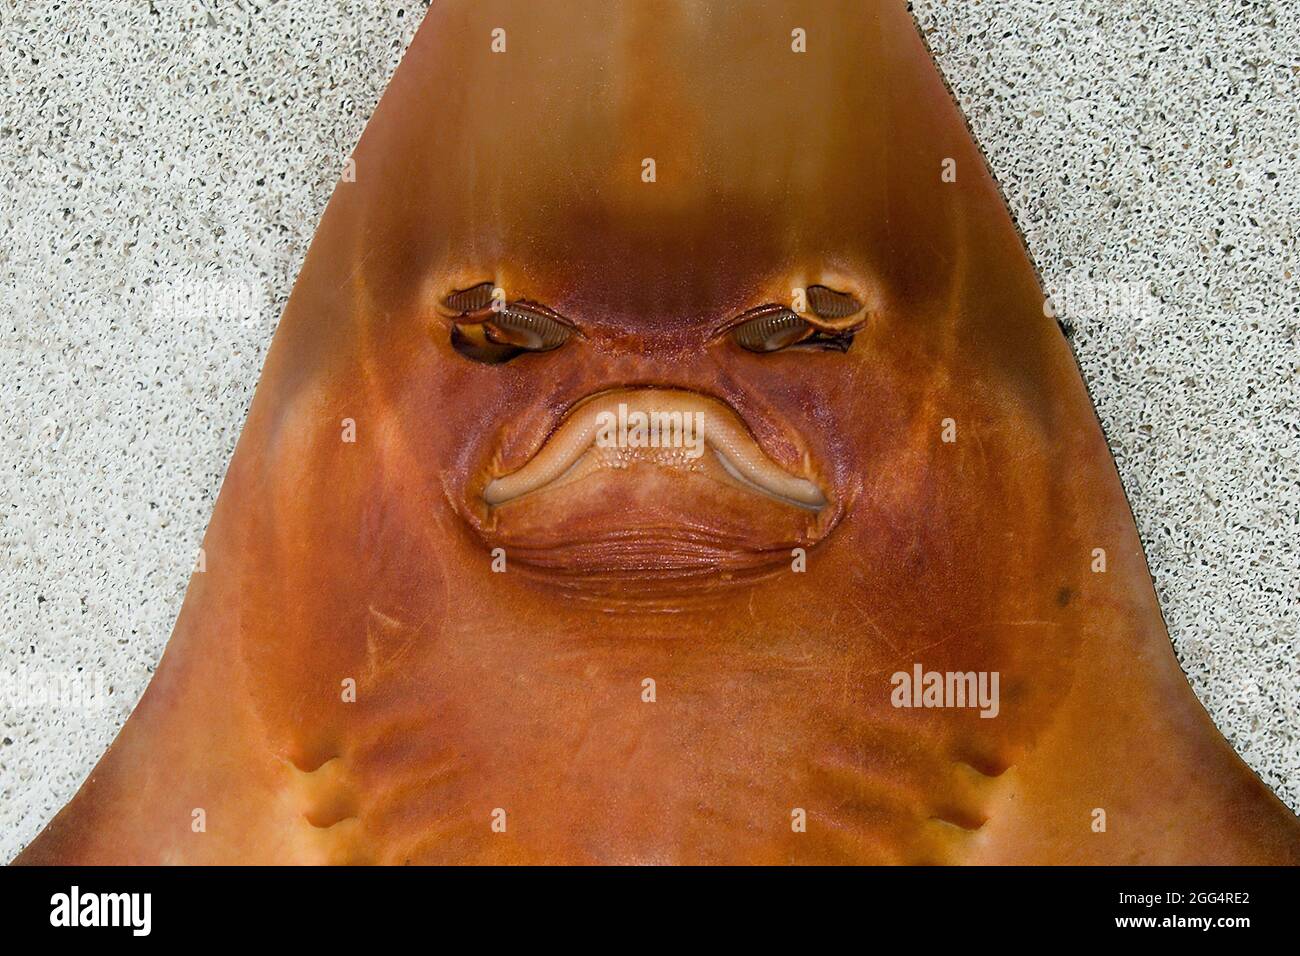 Monstre des profondeurs. Photo de tête très rapprochée inhabituelle de la face inférieure d'un rayon de nez de Shovel (AKA Shark de nez de Shovel). Art. Mur extrême Australie. Banque D'Images